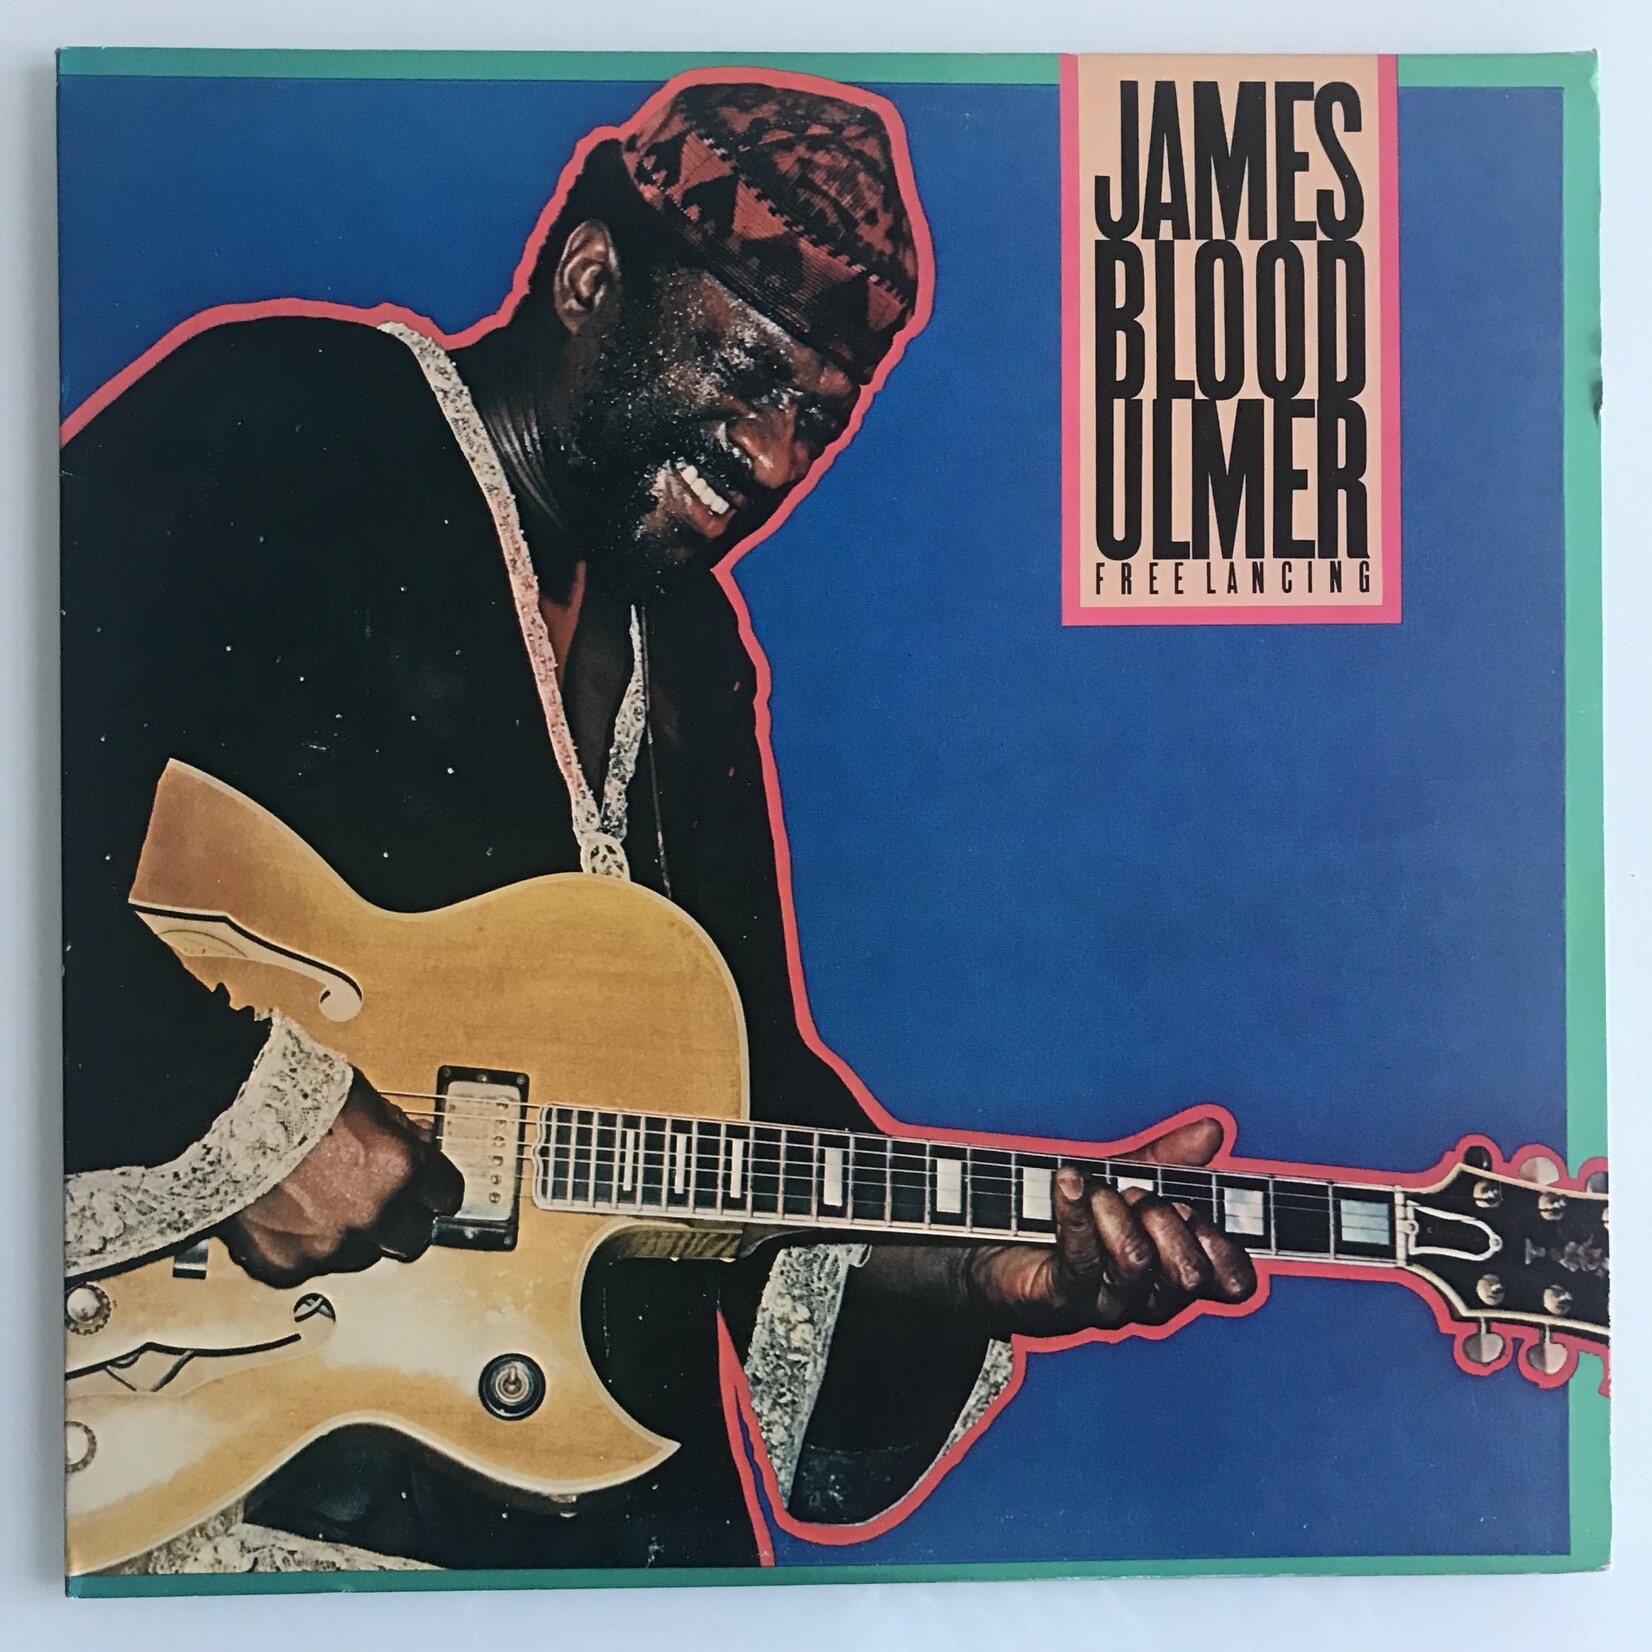 James Blood Ulmer - Freelancing - Vinyl LP (USED)